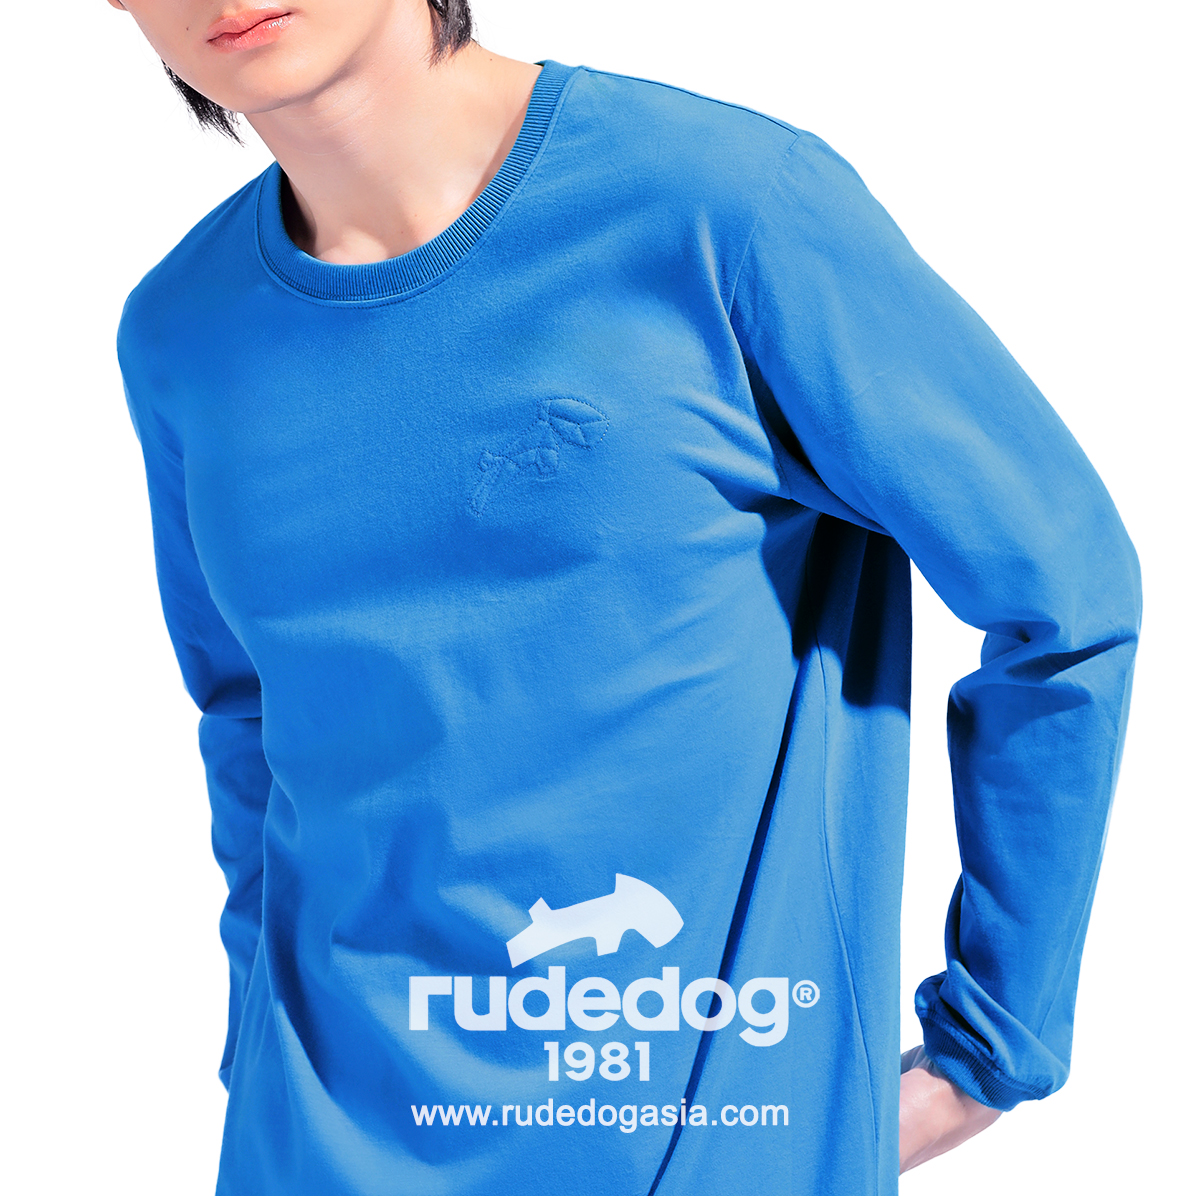 เสื้อยืดแขนยาว rudedog รุ่น Dogstar สีฟ้า ผู้ชาย